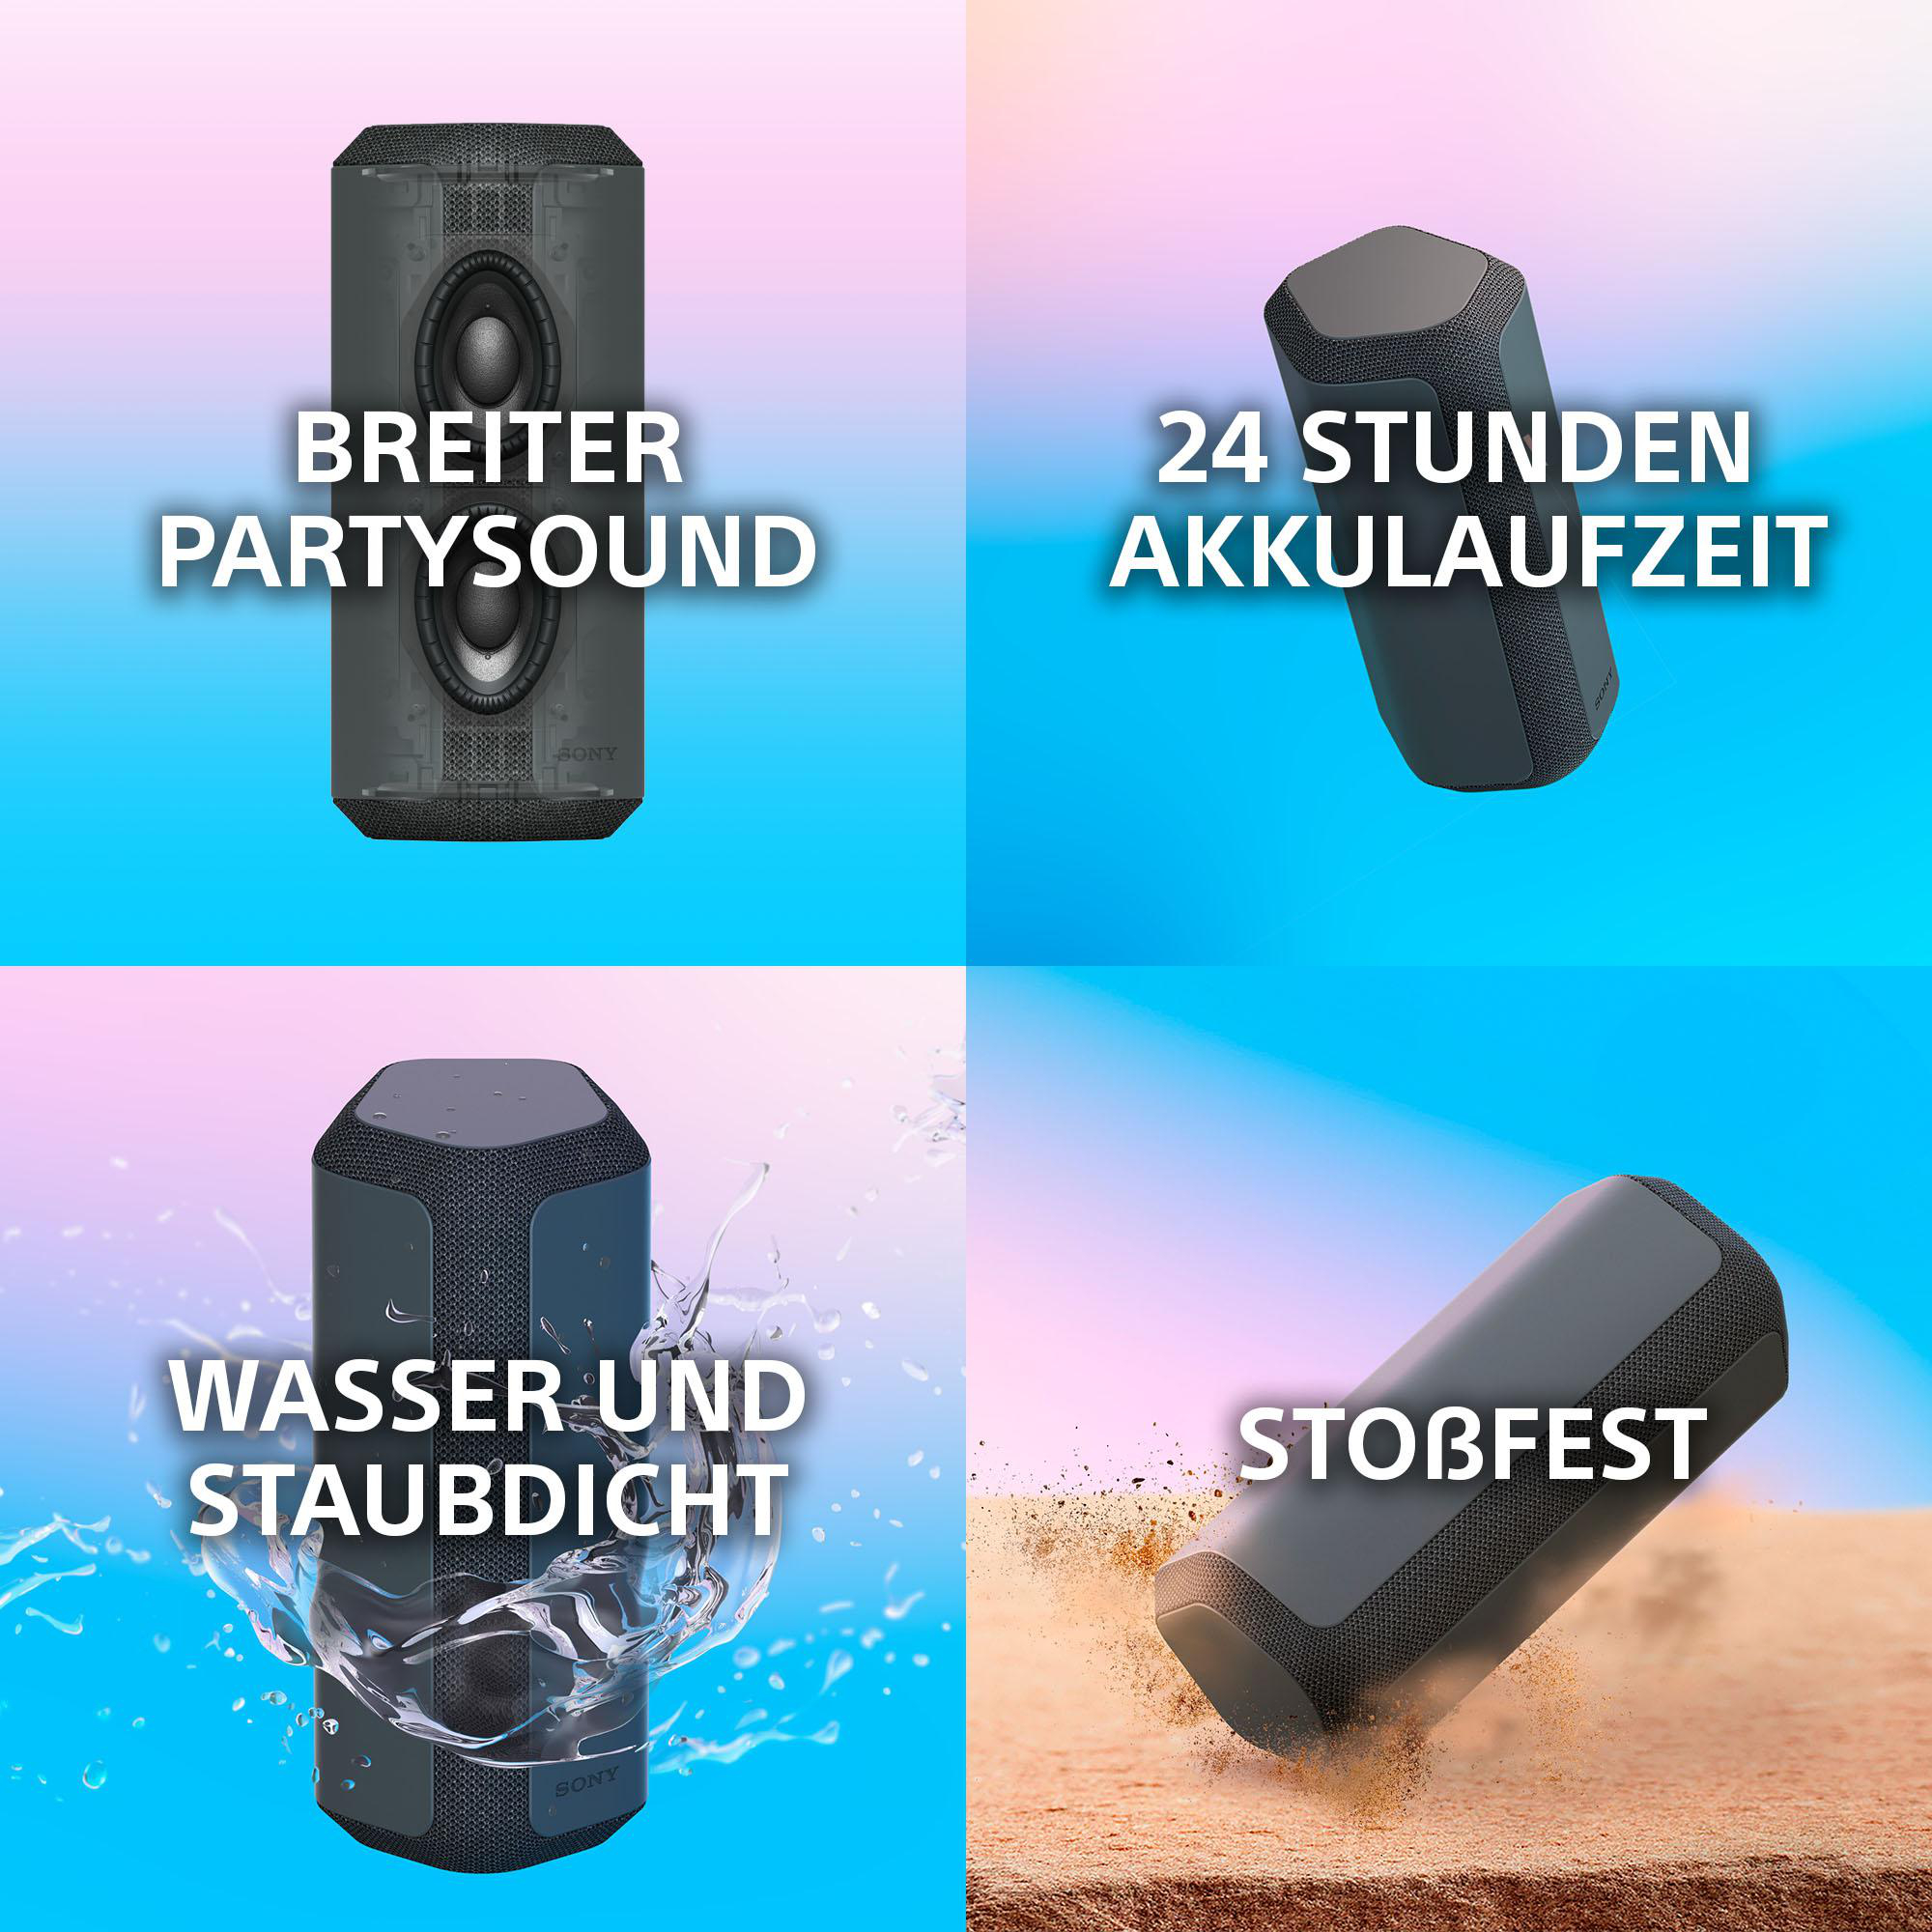 SONY 300 Bluetooth SRS-XE Lautsprecher, Blau, Wasserfest